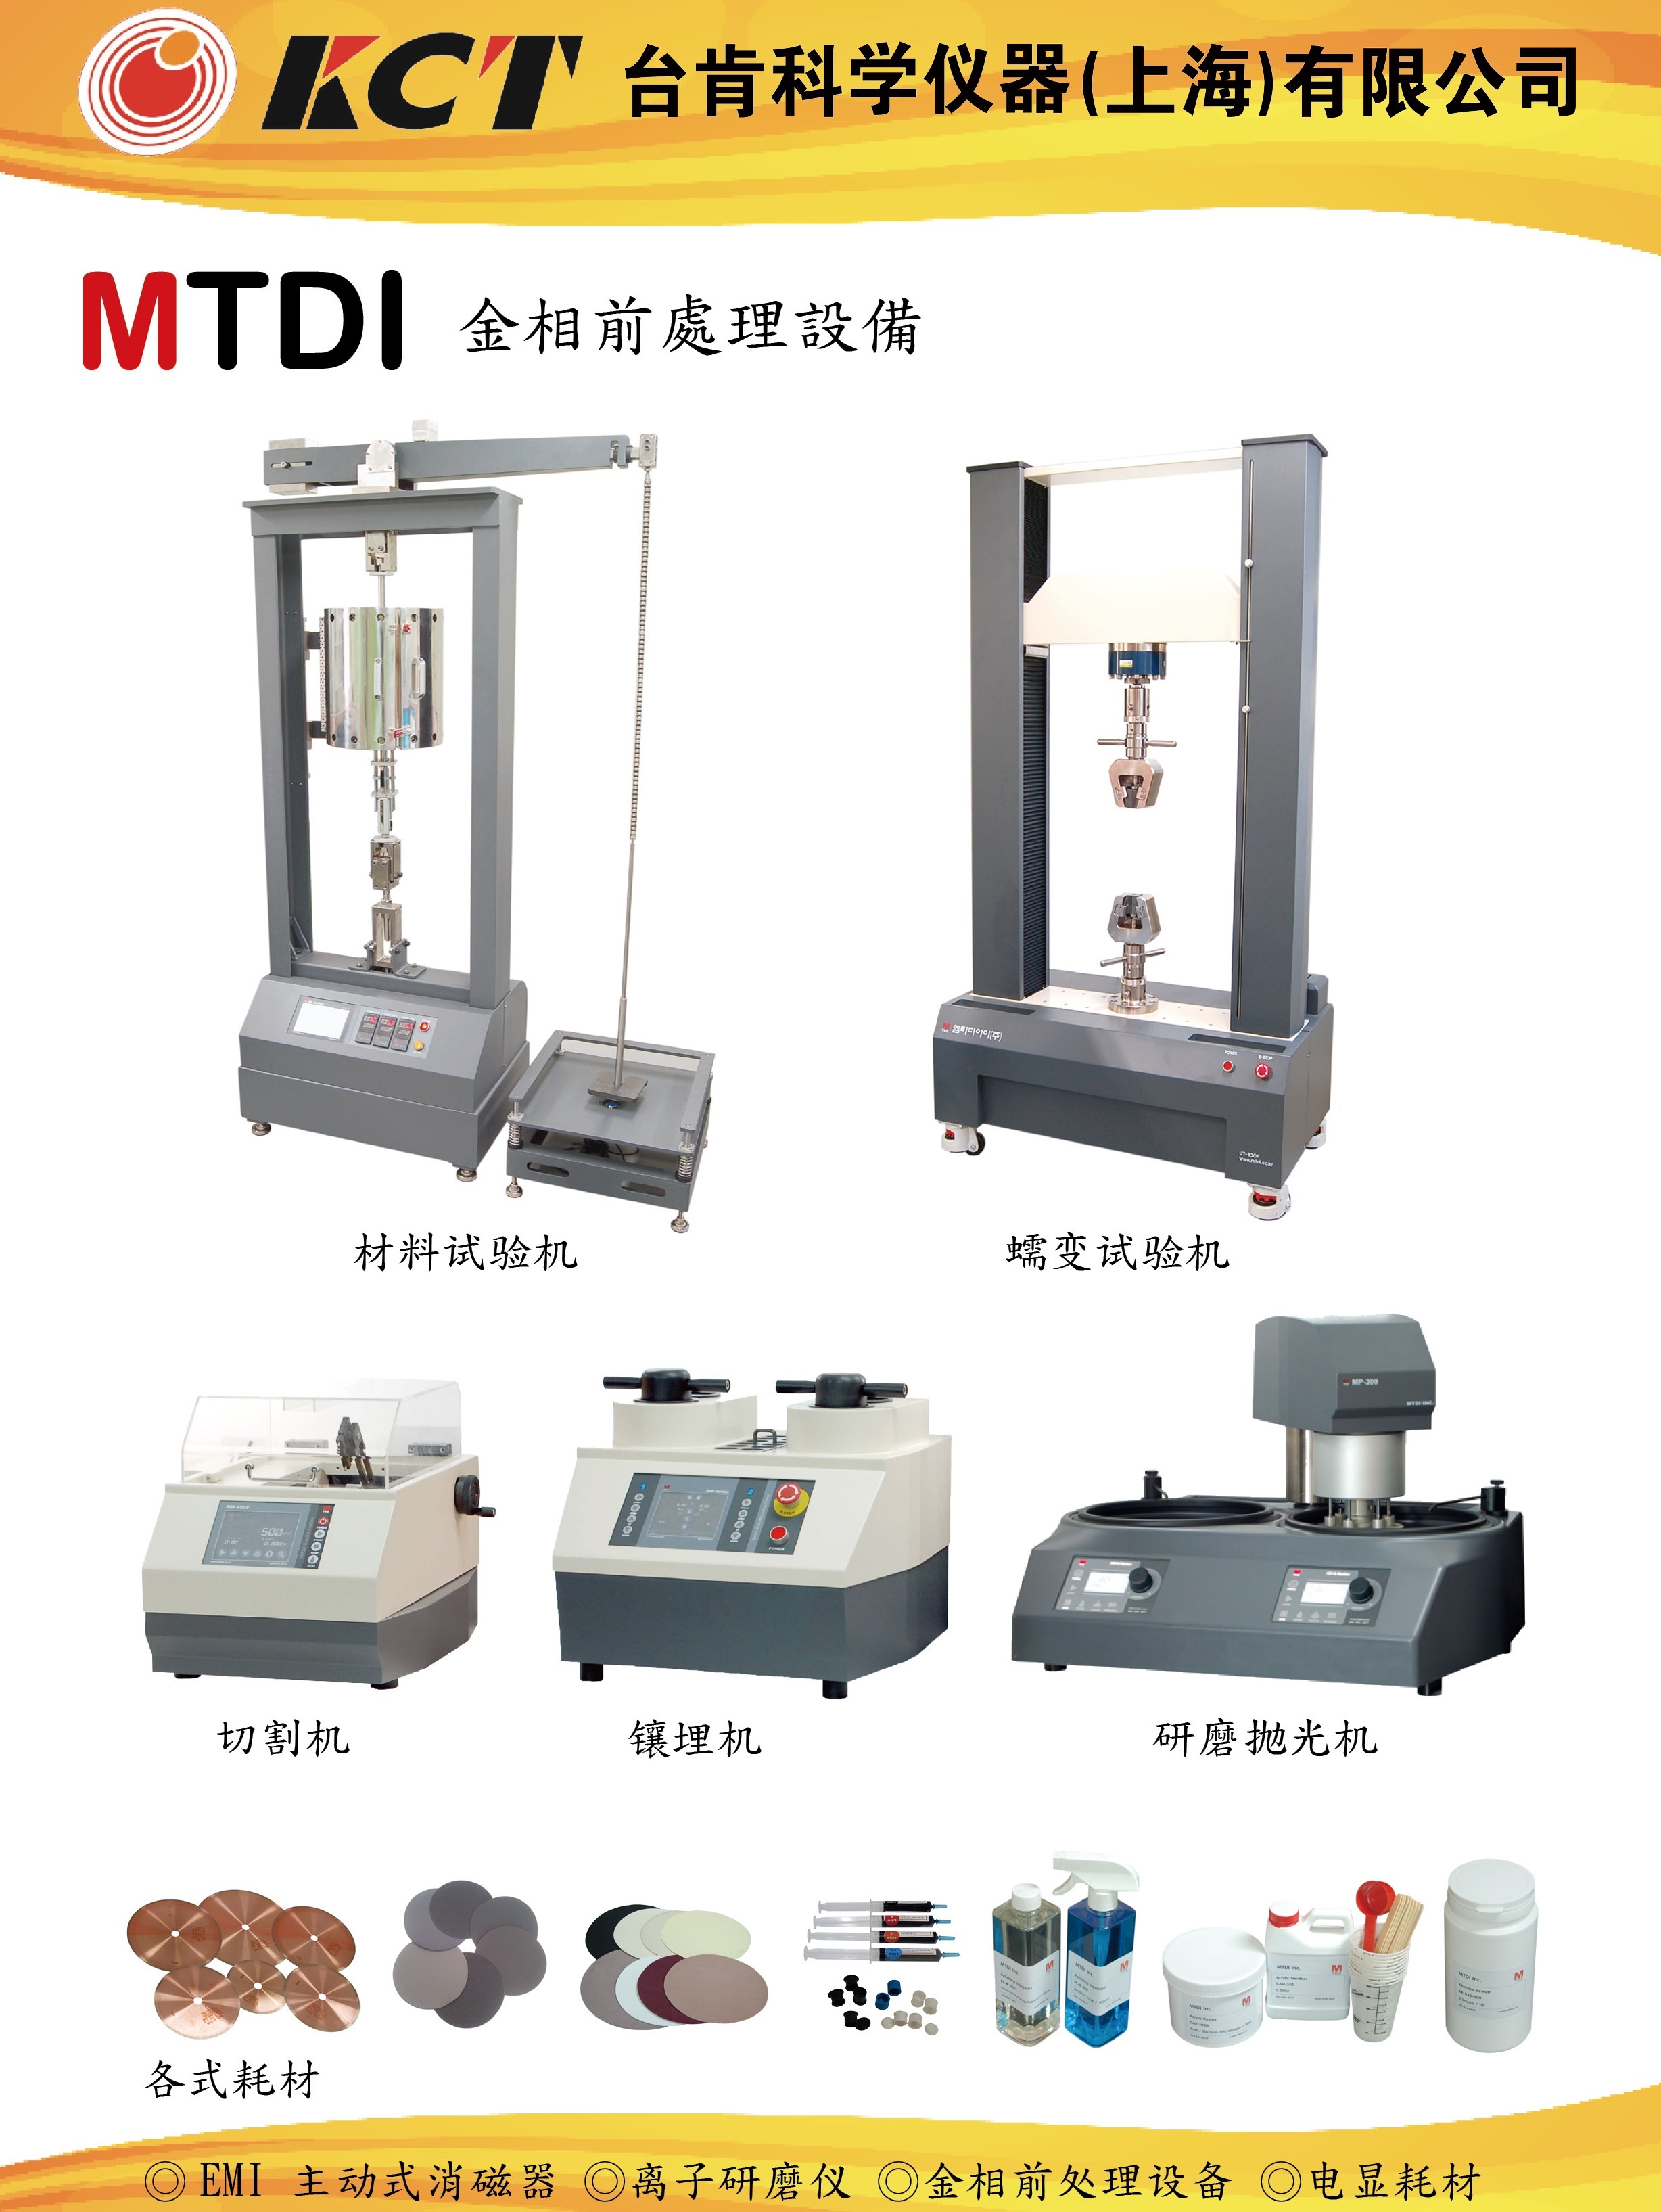 MTDI 节能型研磨抛光机